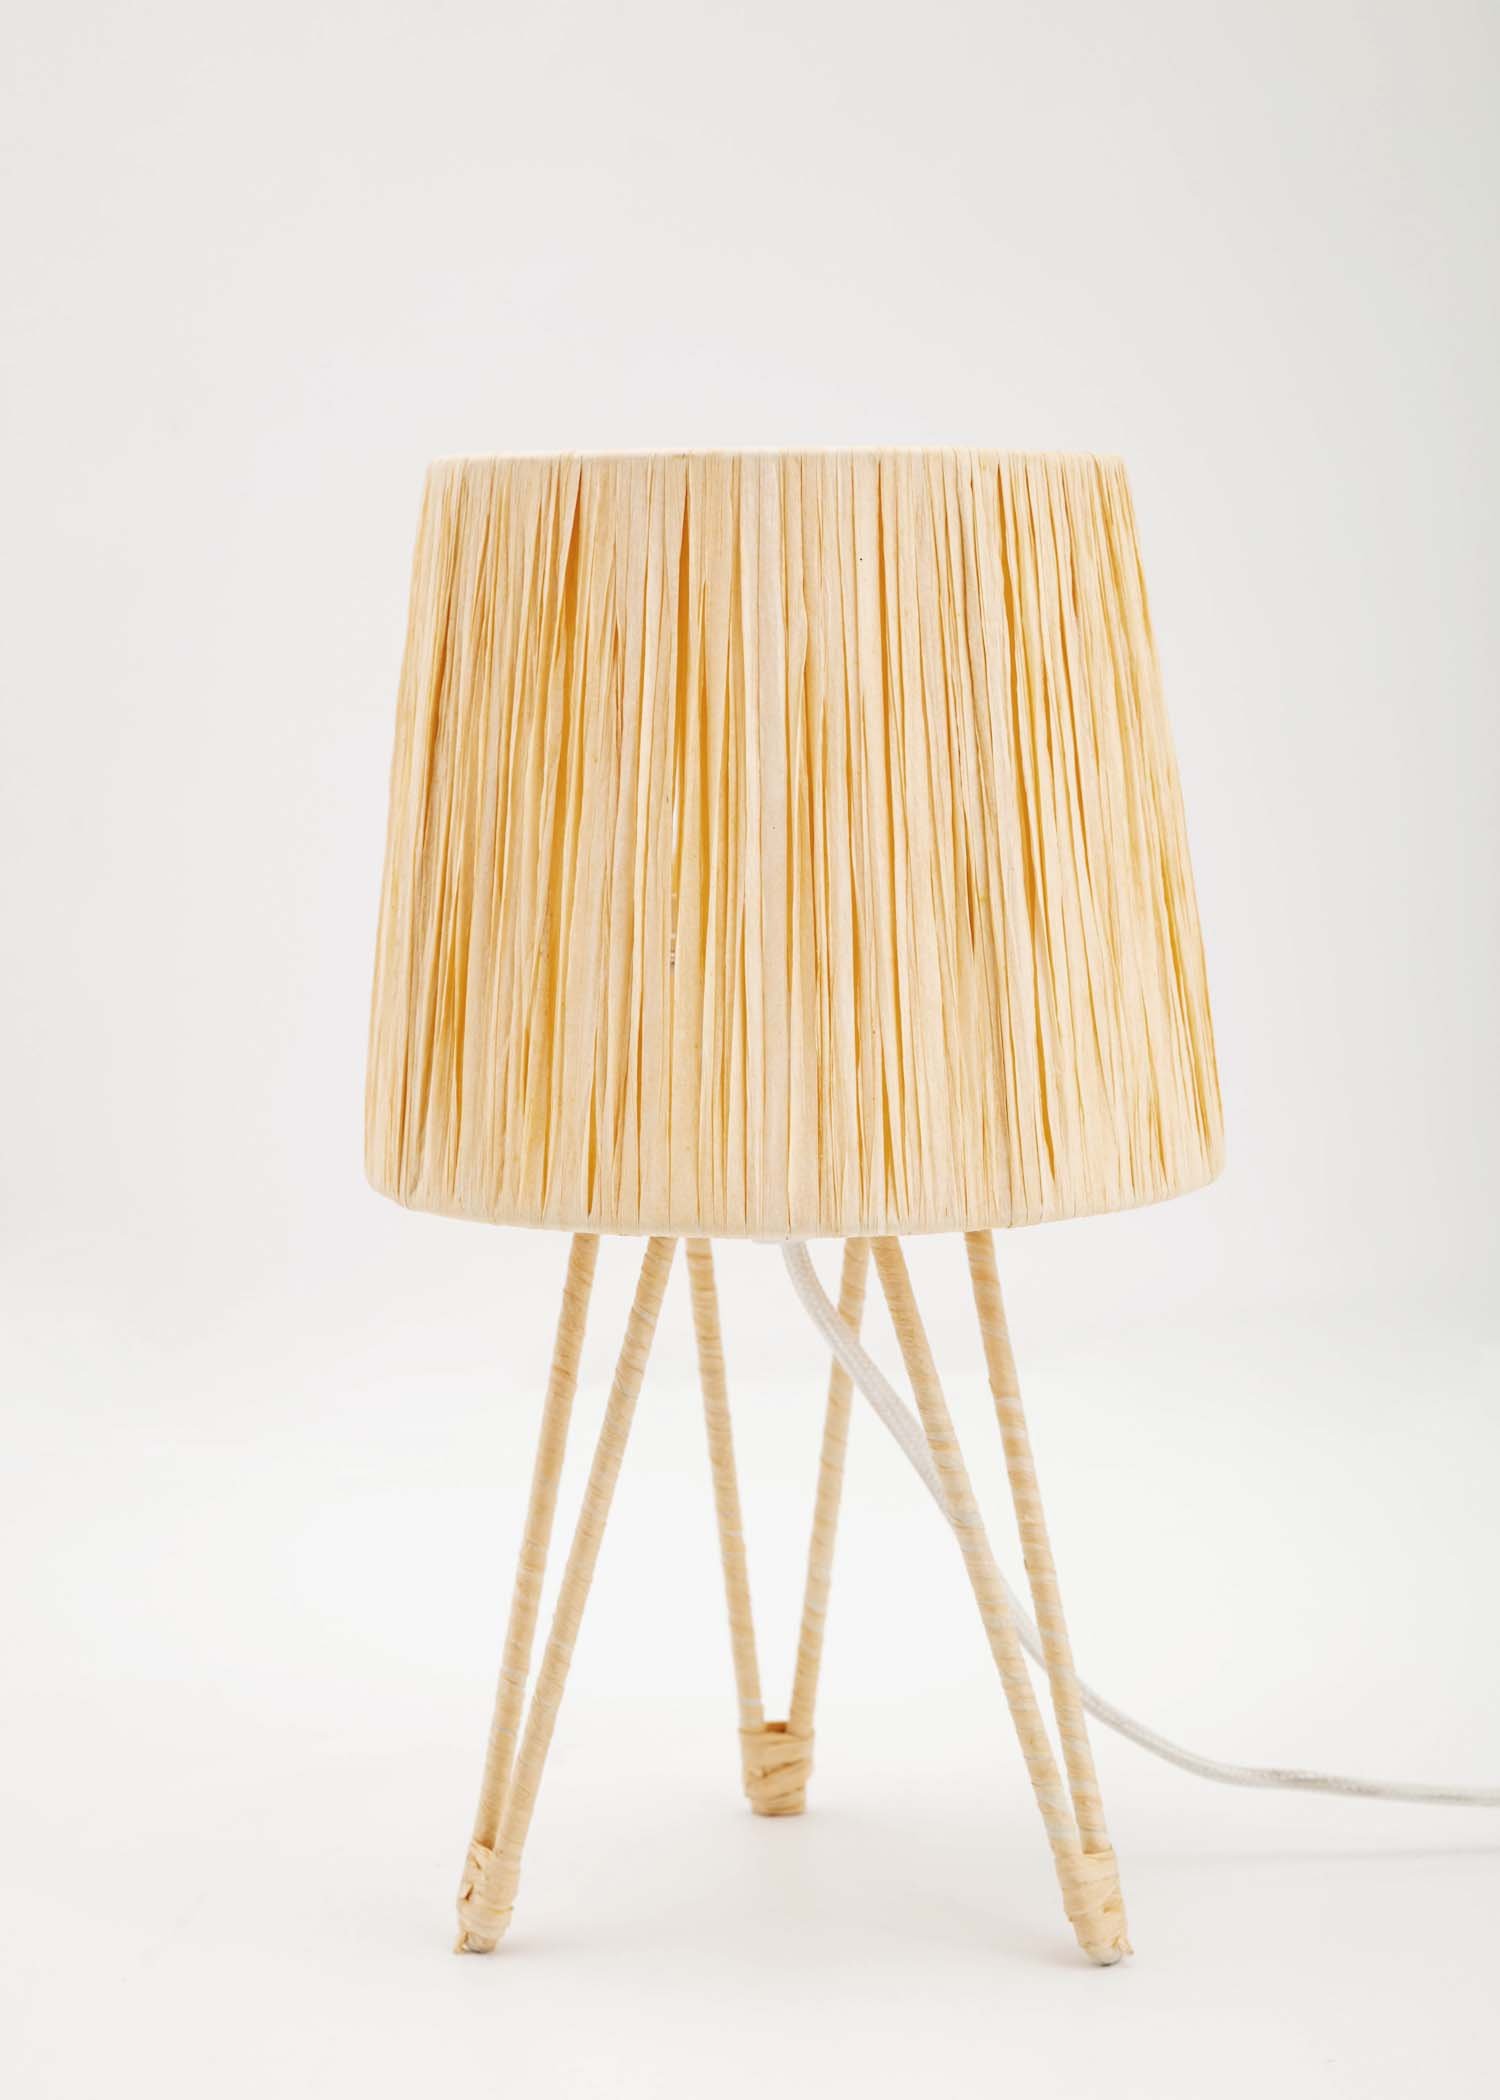 Simo table lamp Image 0